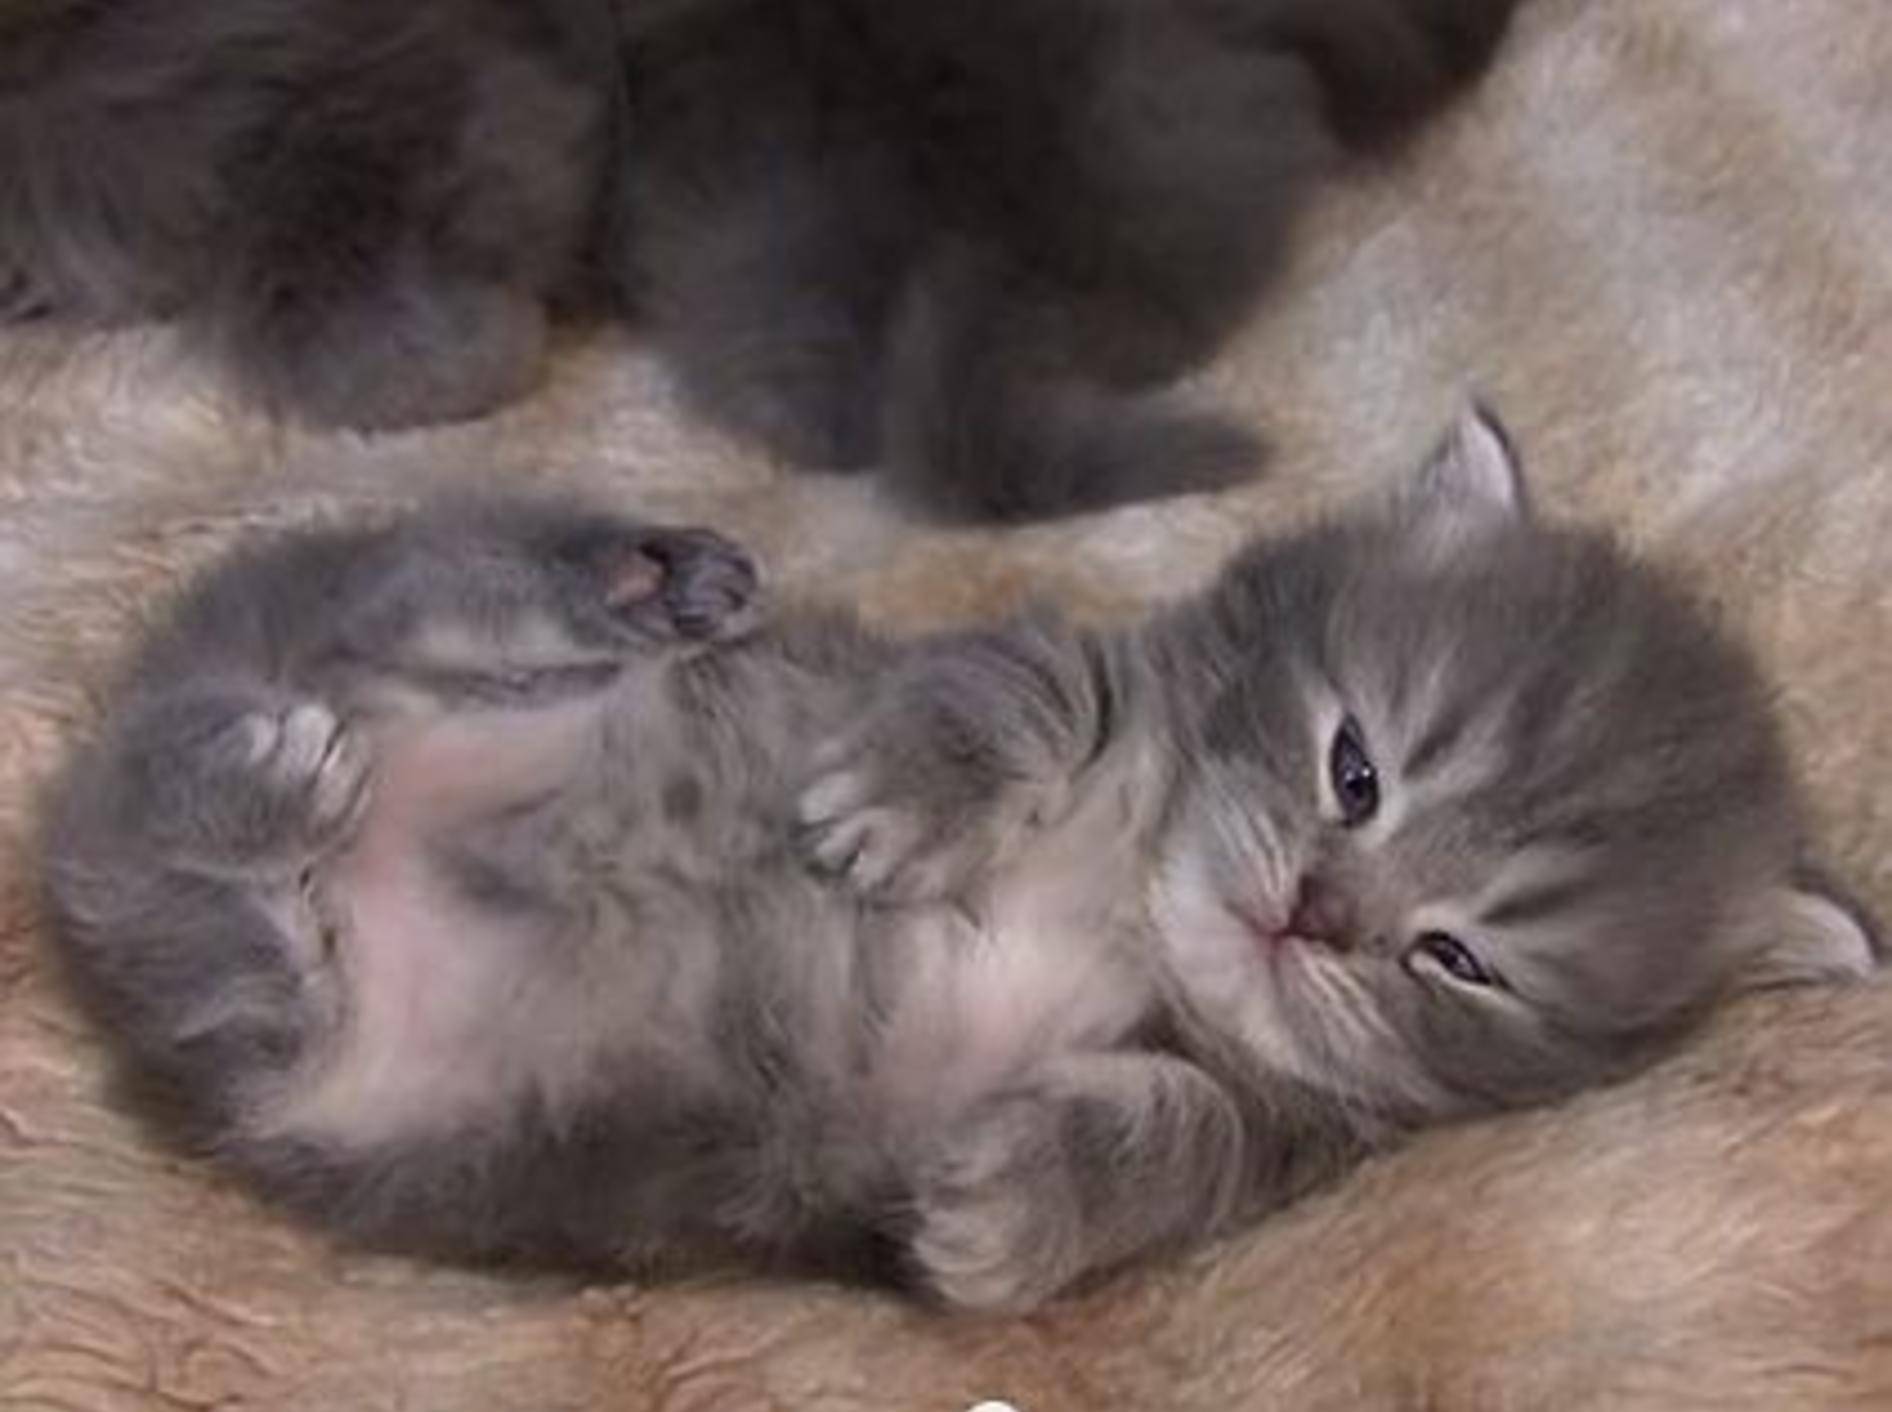 Gute-Nacht-Video mit träumenden Babykatzen – Bild: Youtube / stefani292008obasja